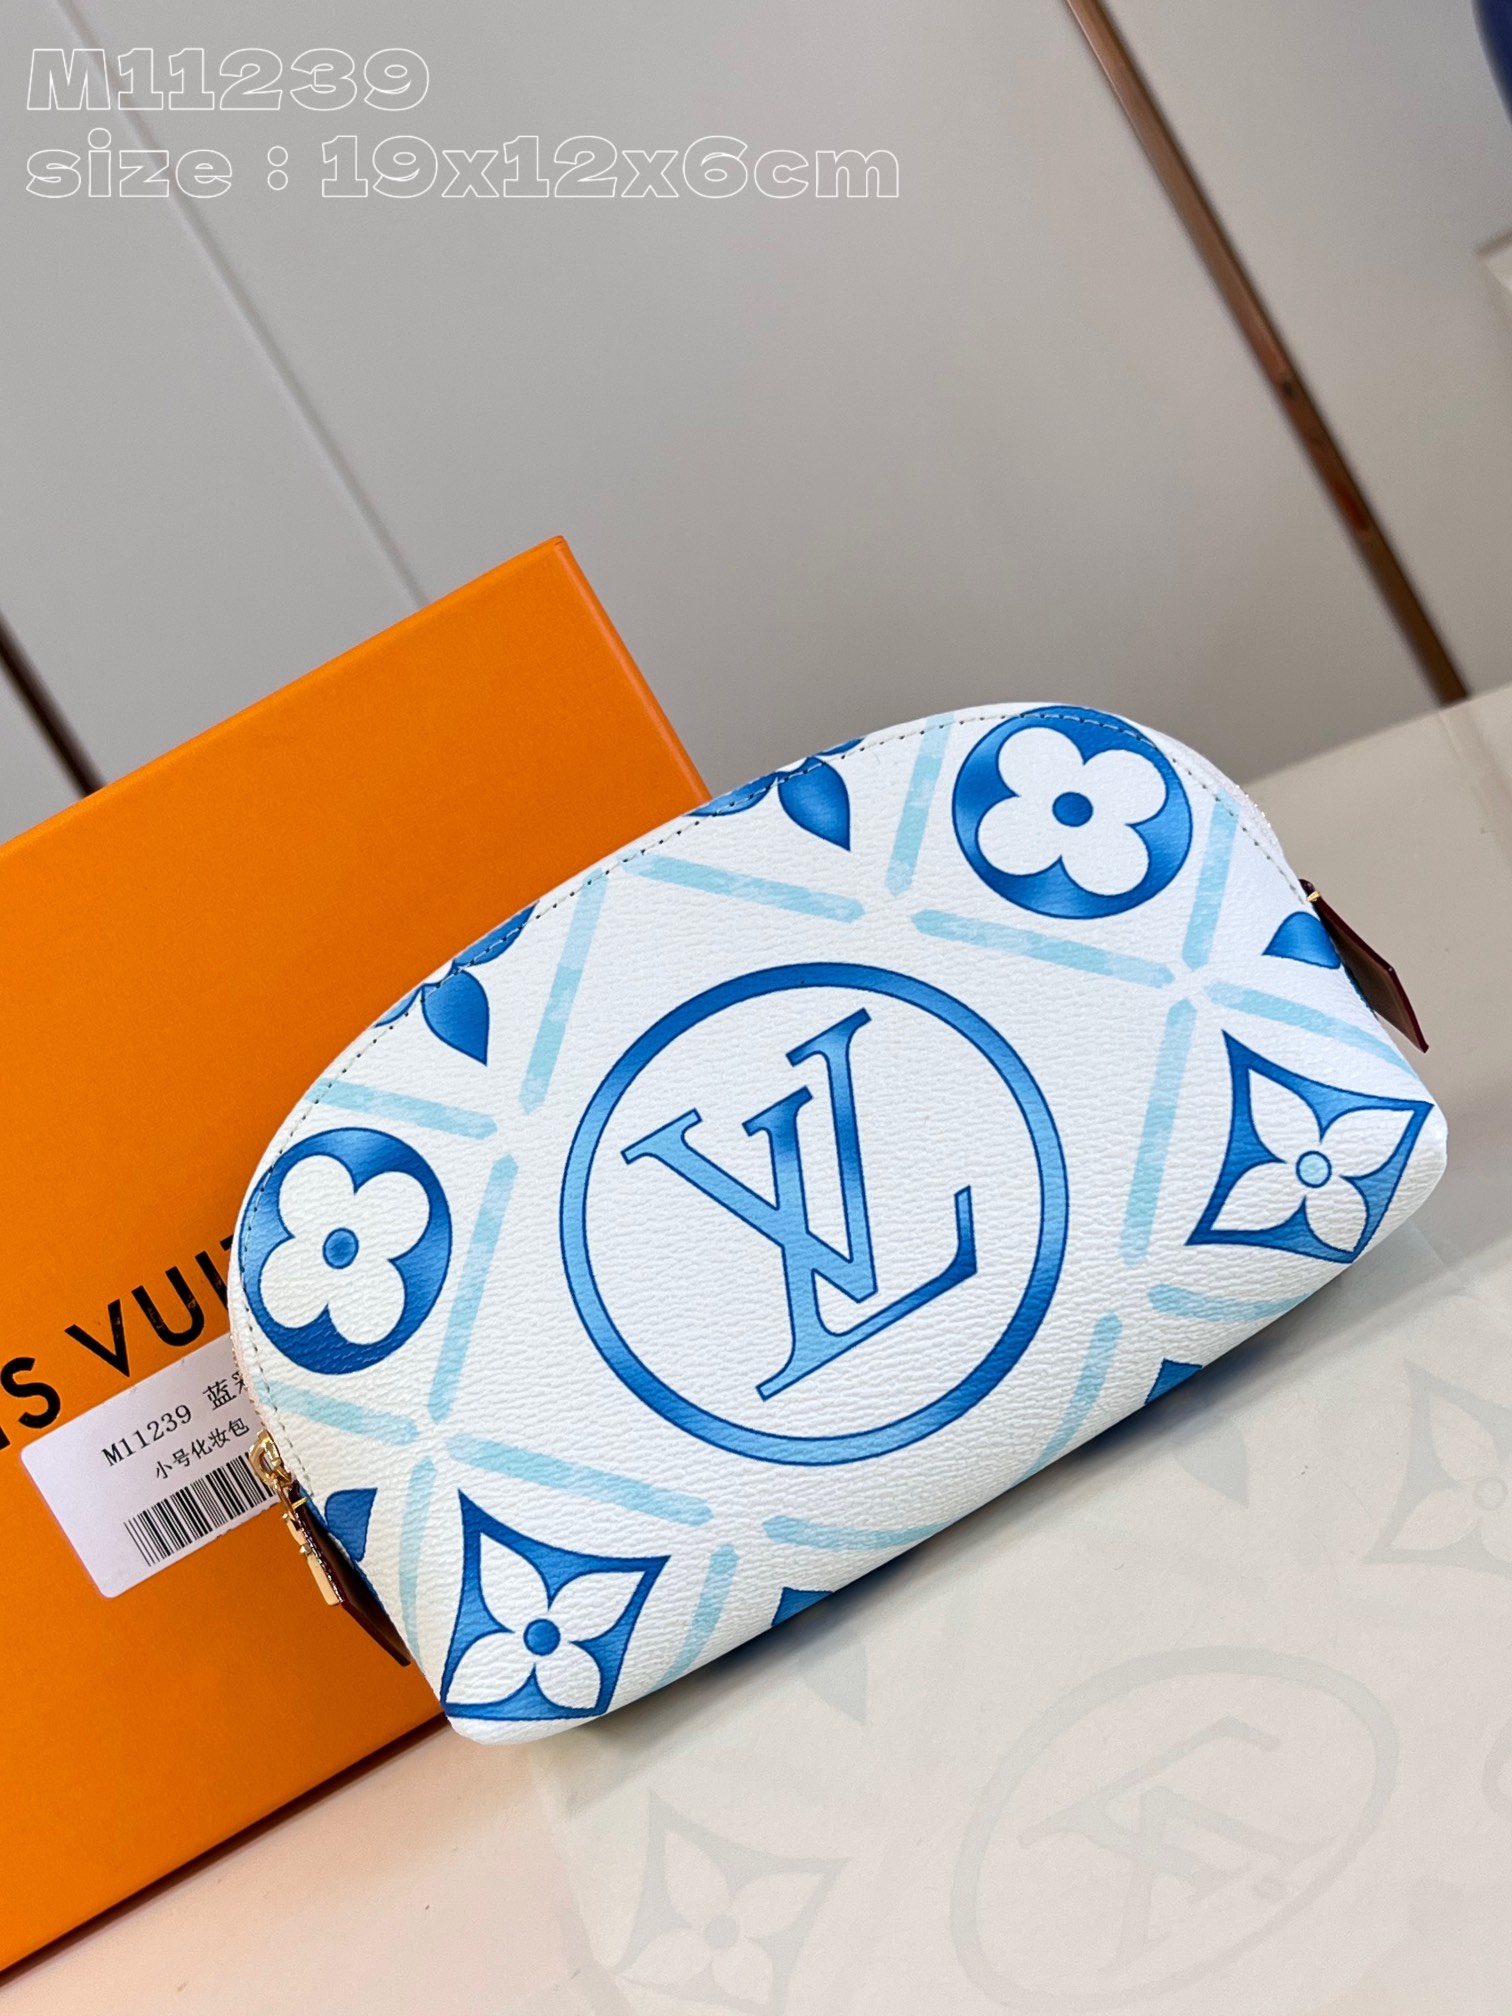 הפופולרי ביותר
 לואי ויטון תיקים תיקי איפור כחול קנבס אוסף קיץ LV Circle M11239